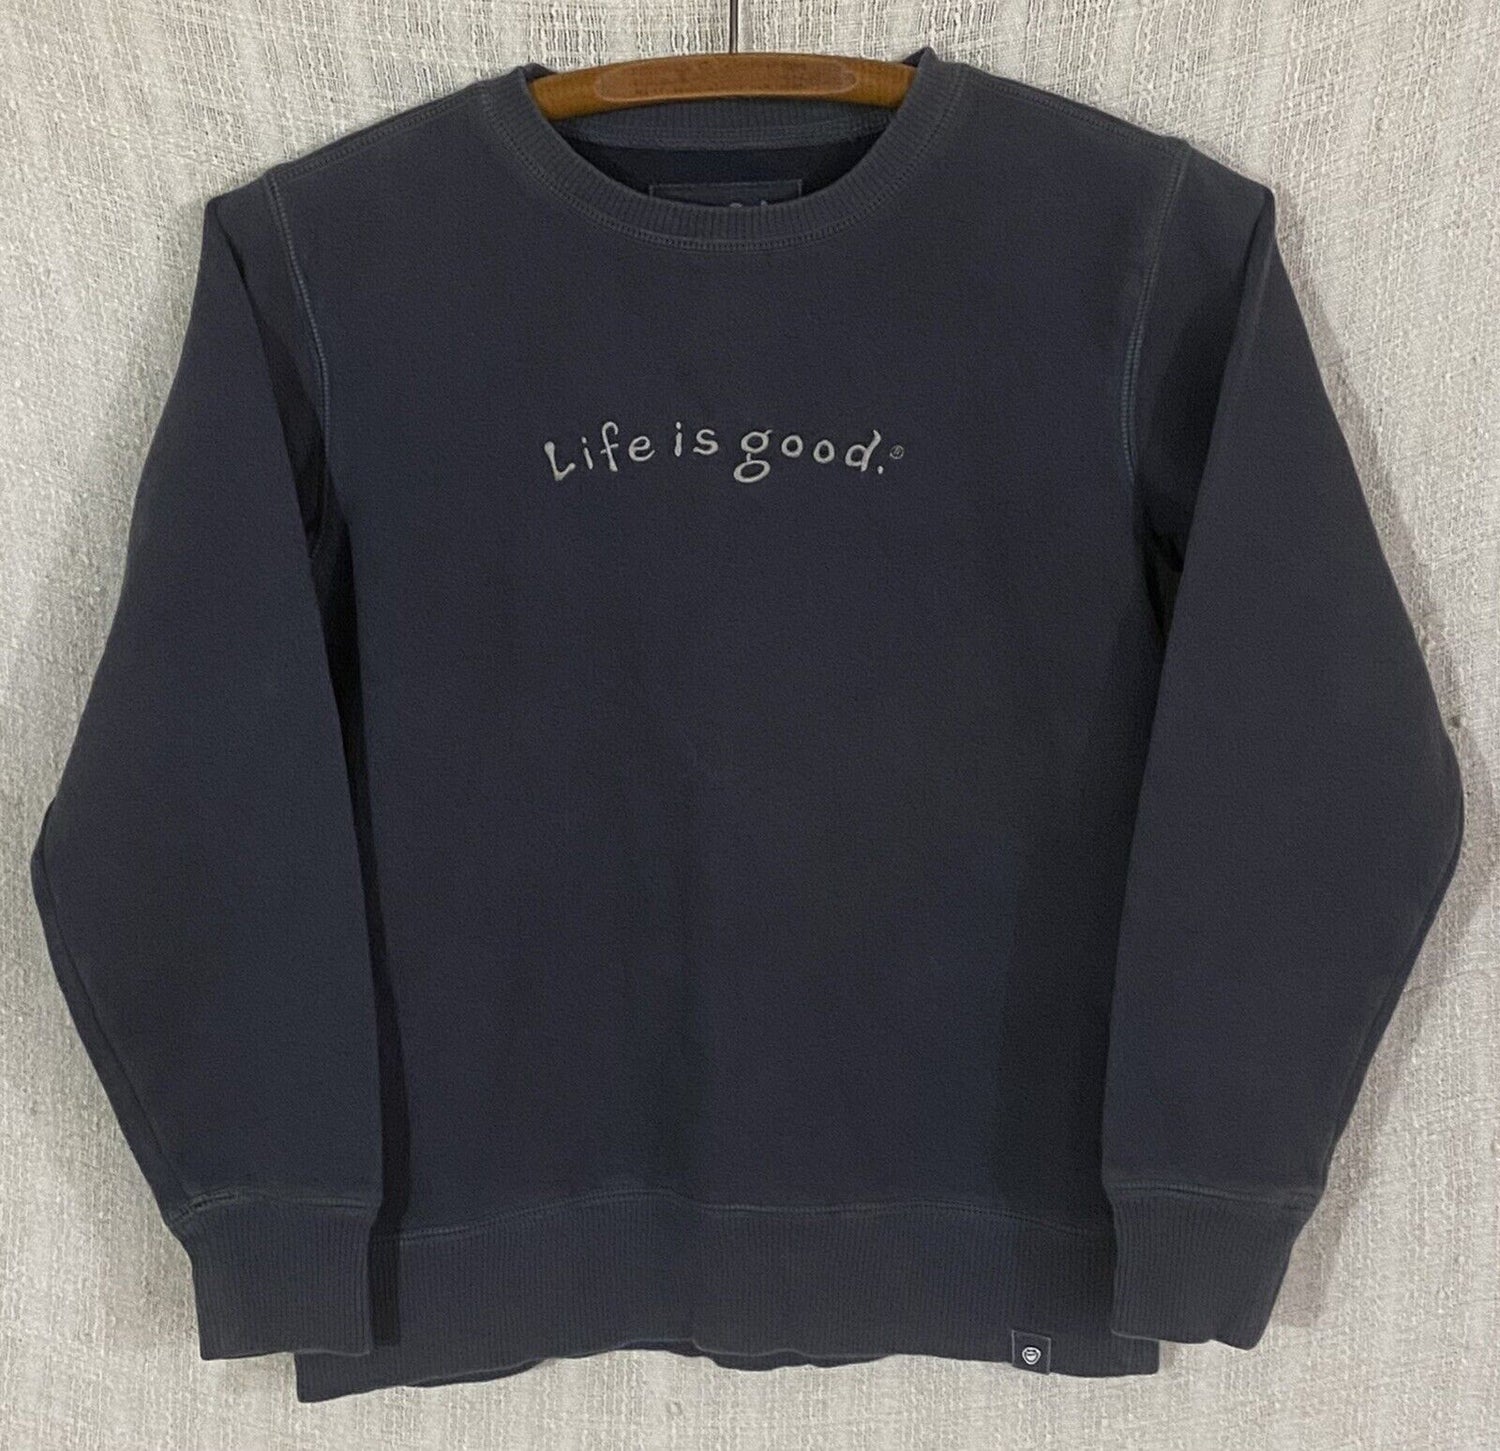 Life Is Good Crewneck Sweatshirt?